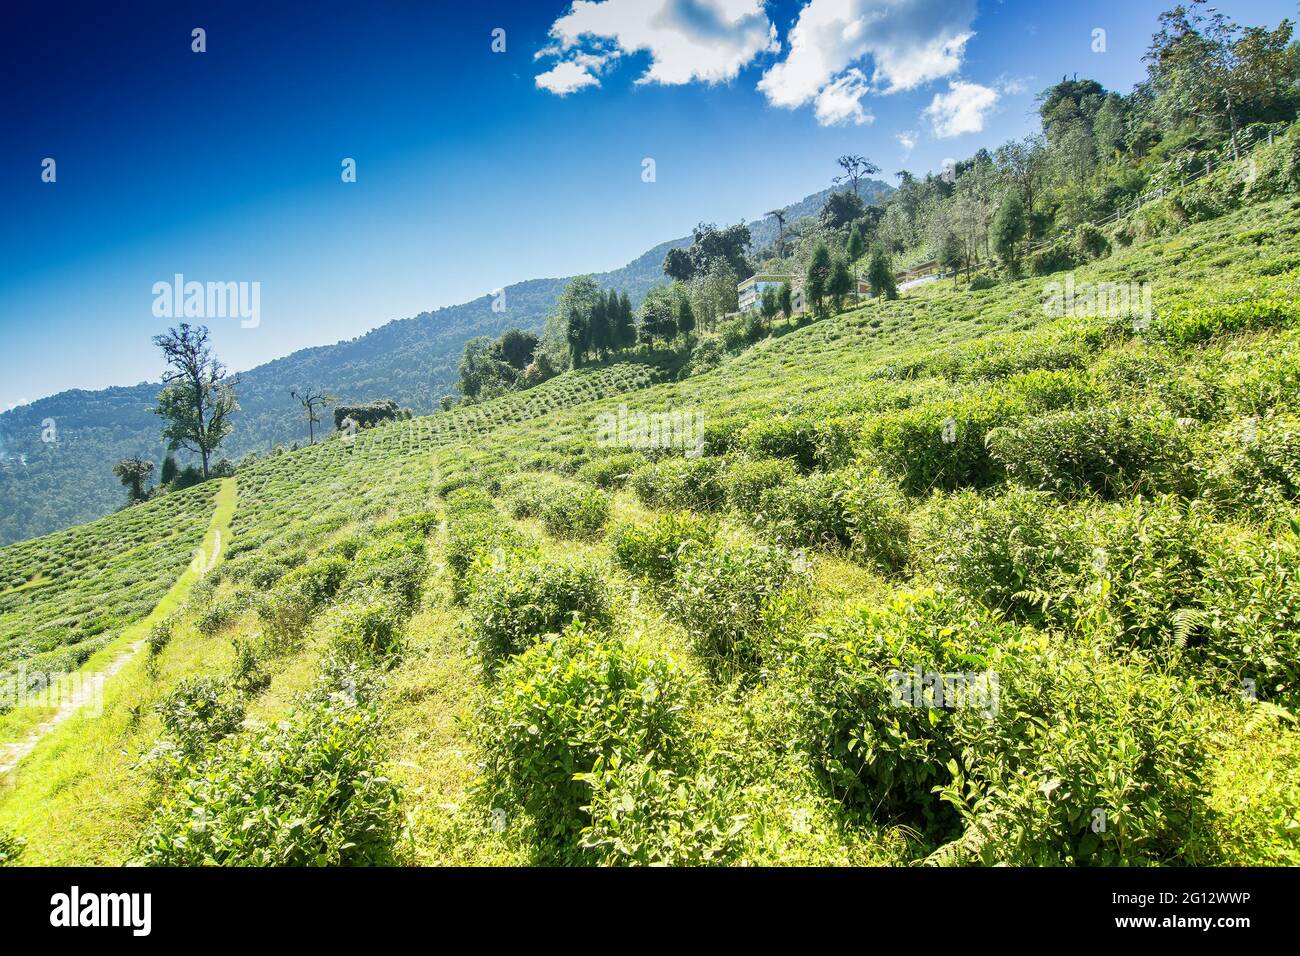 Jardin de thé de Temi de Ravangla, Sikkim, belle plantation de thé vaste sur un terrain en pente greadully avec des montagnes et le ciel bleu en arrière-plan. Il est allumé Banque D'Images